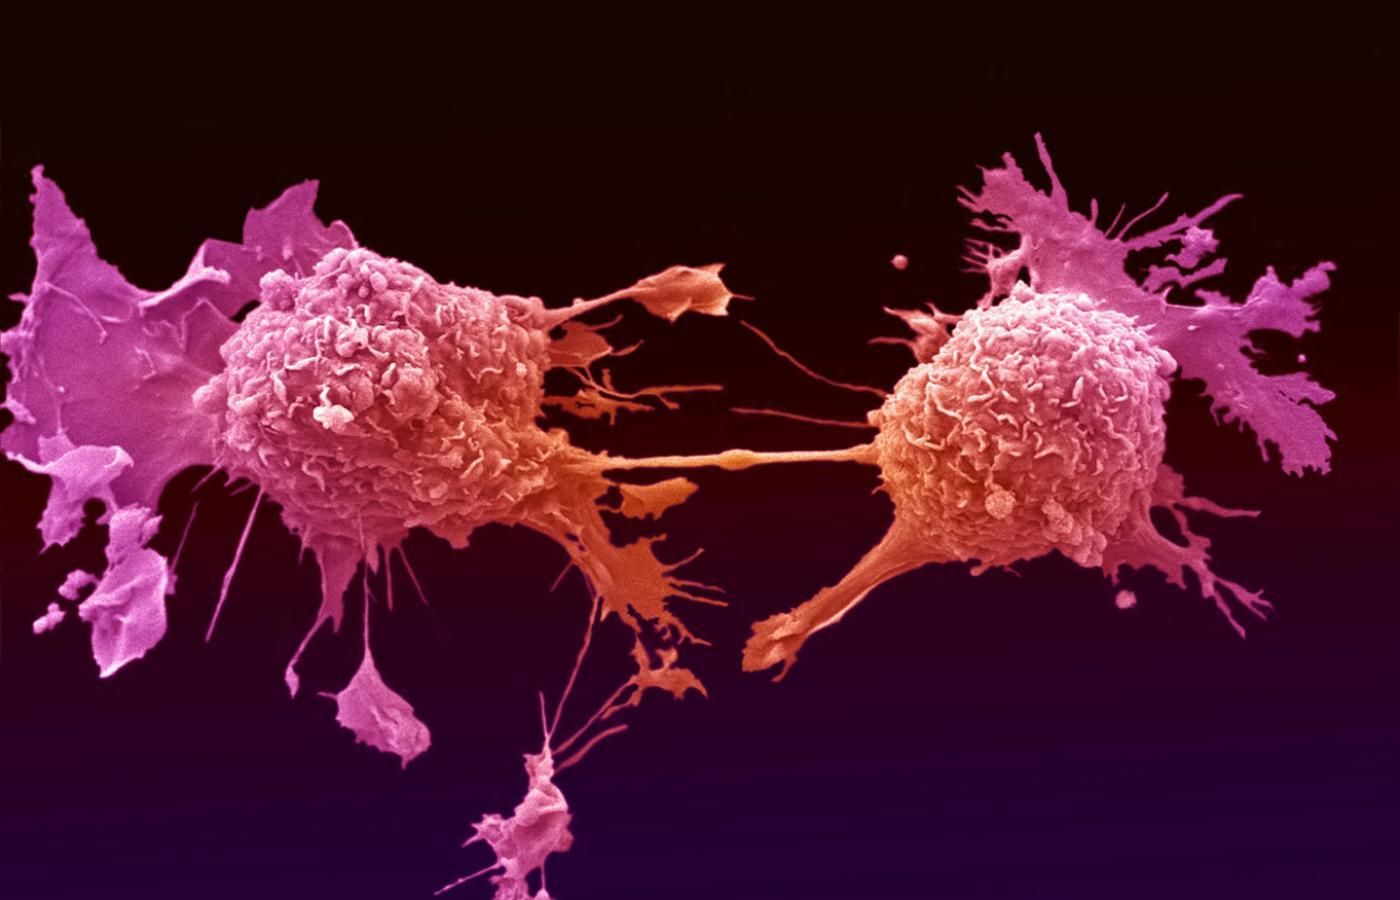 Ультразвук может обезвреживать раковые клетки, не влияя на здоровые